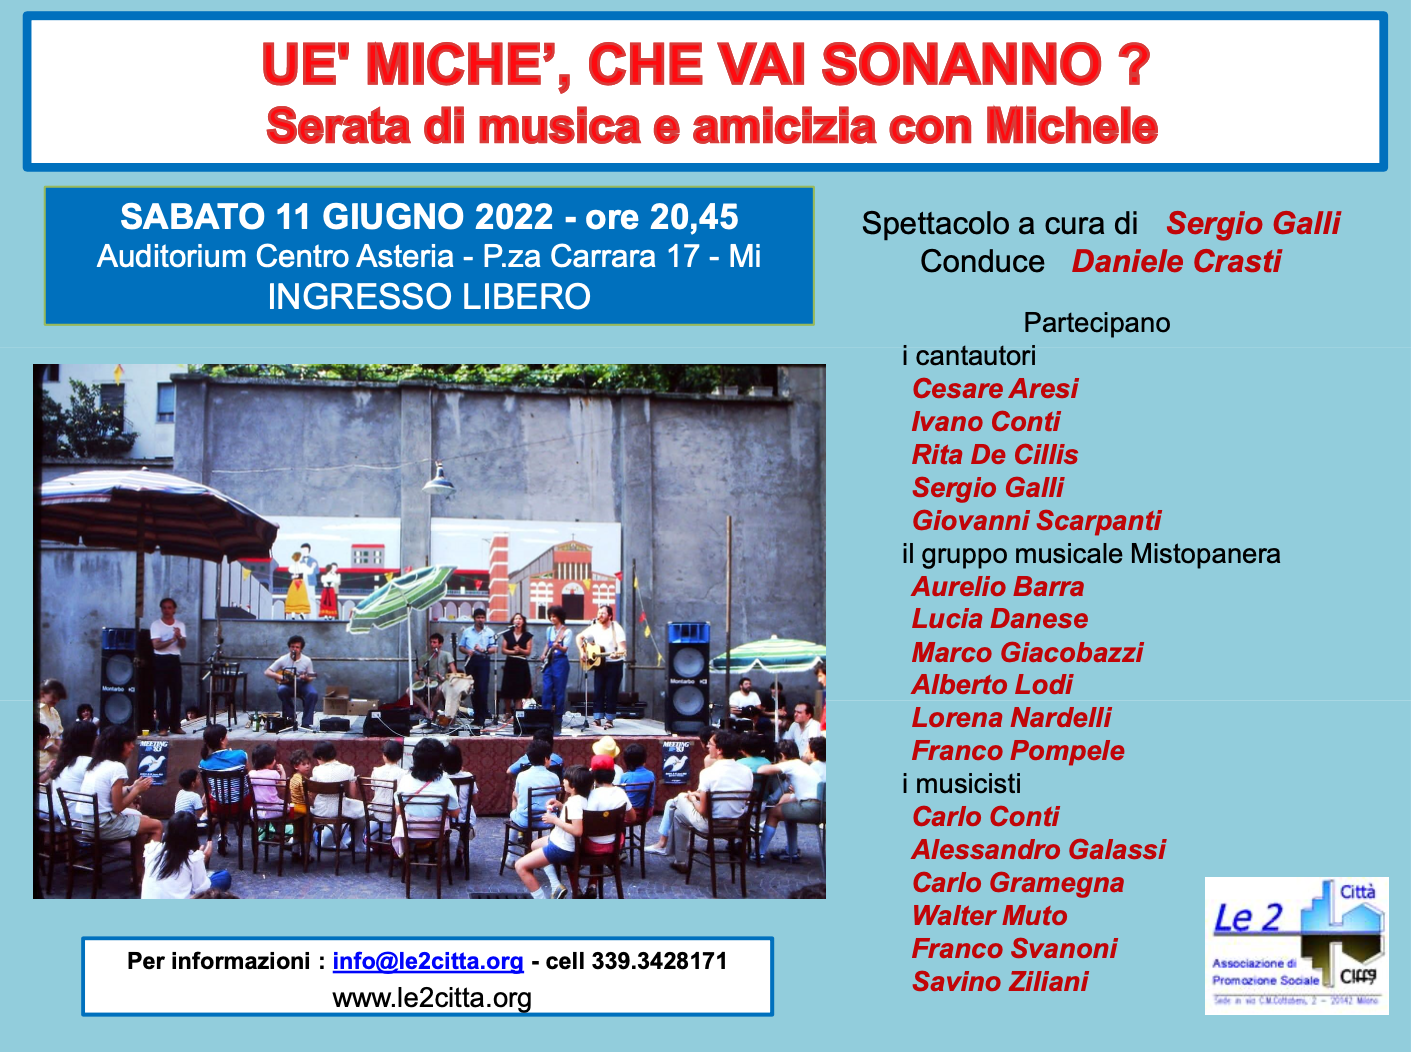 Featured image for “Milano: Eè michè, che vai sonanno?”